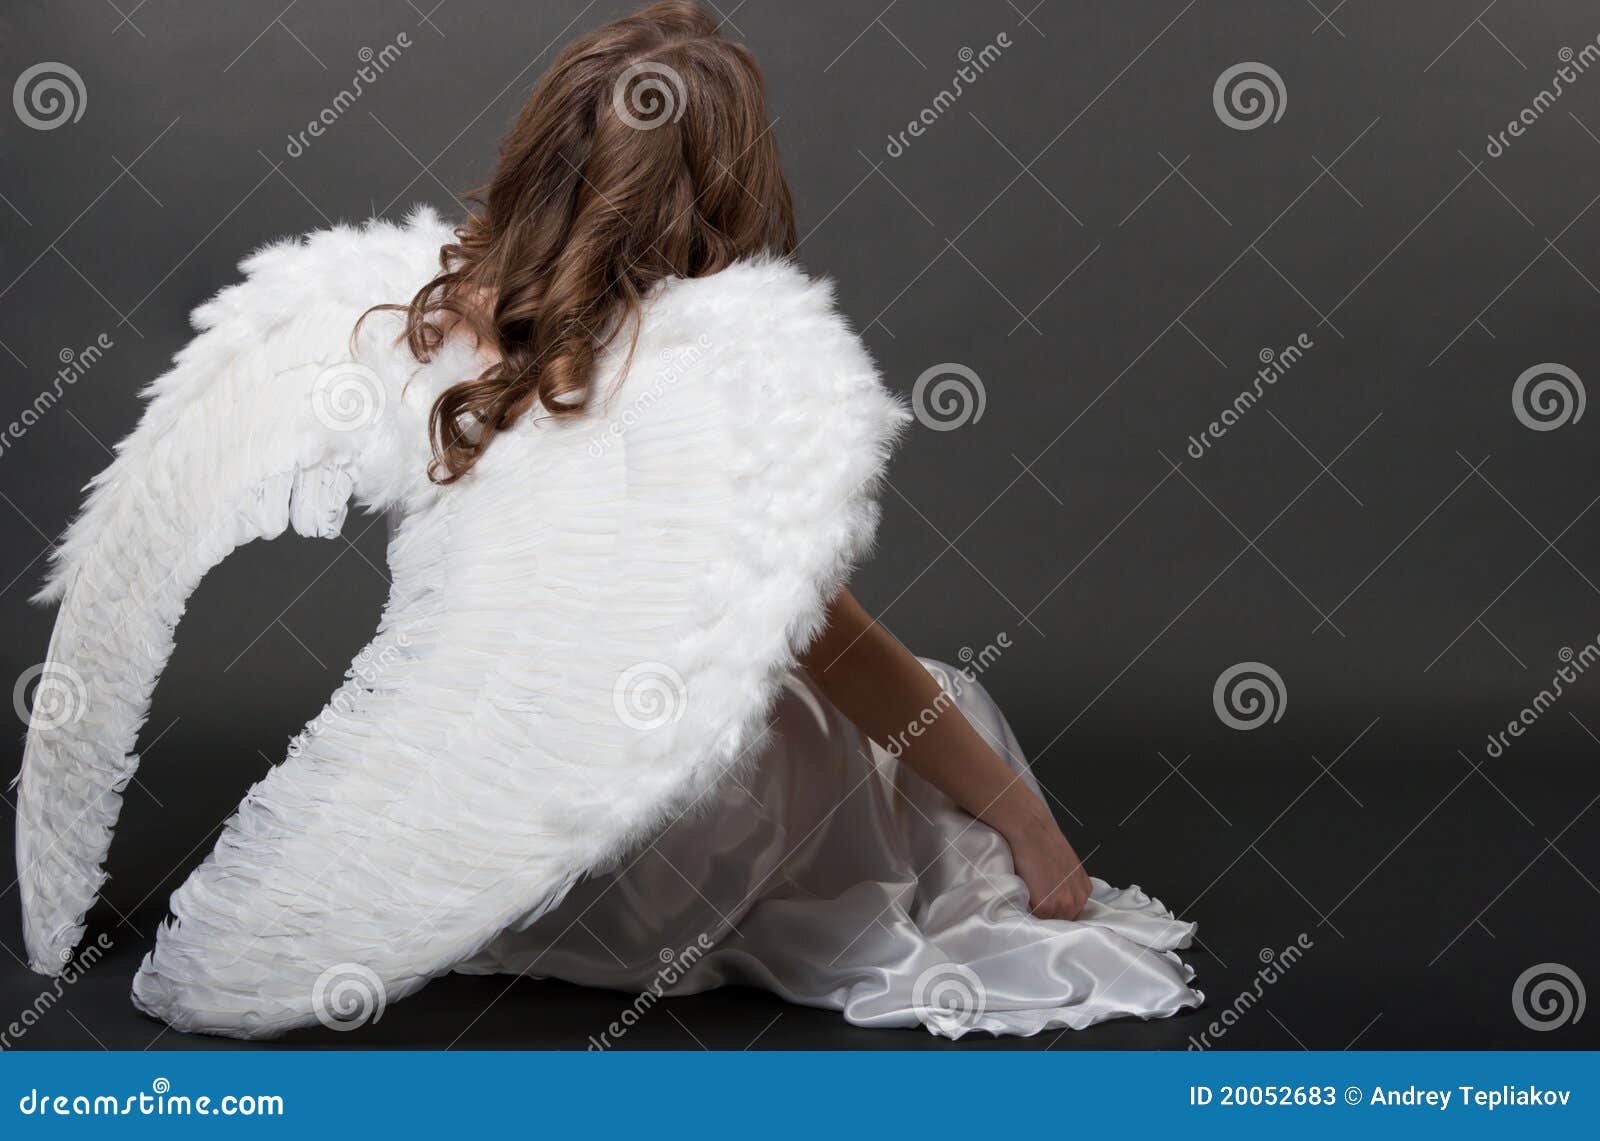 Дайте мне крылья оригинал. Белая накидка Крылья. Белые Крылья костюм. Фотосессия с белыми крыльями в студии. Девушка в белой накидке.